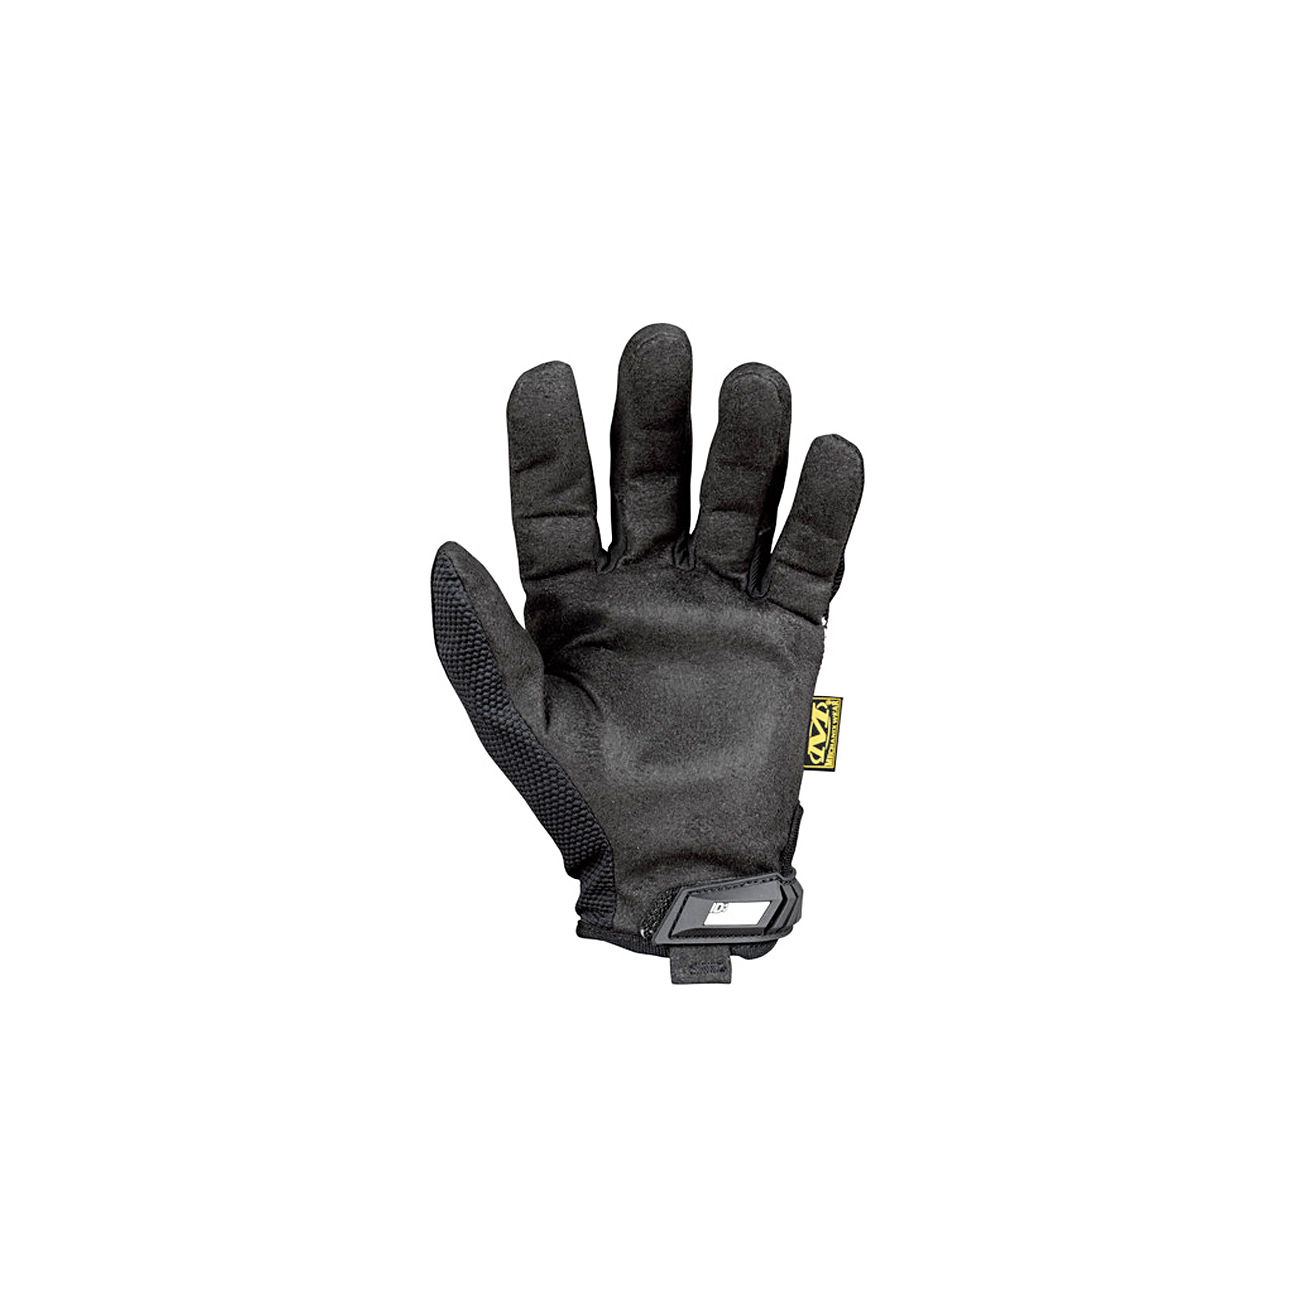 Mechanix Wear Original Handschuhe schwarz / weiss Bild 1